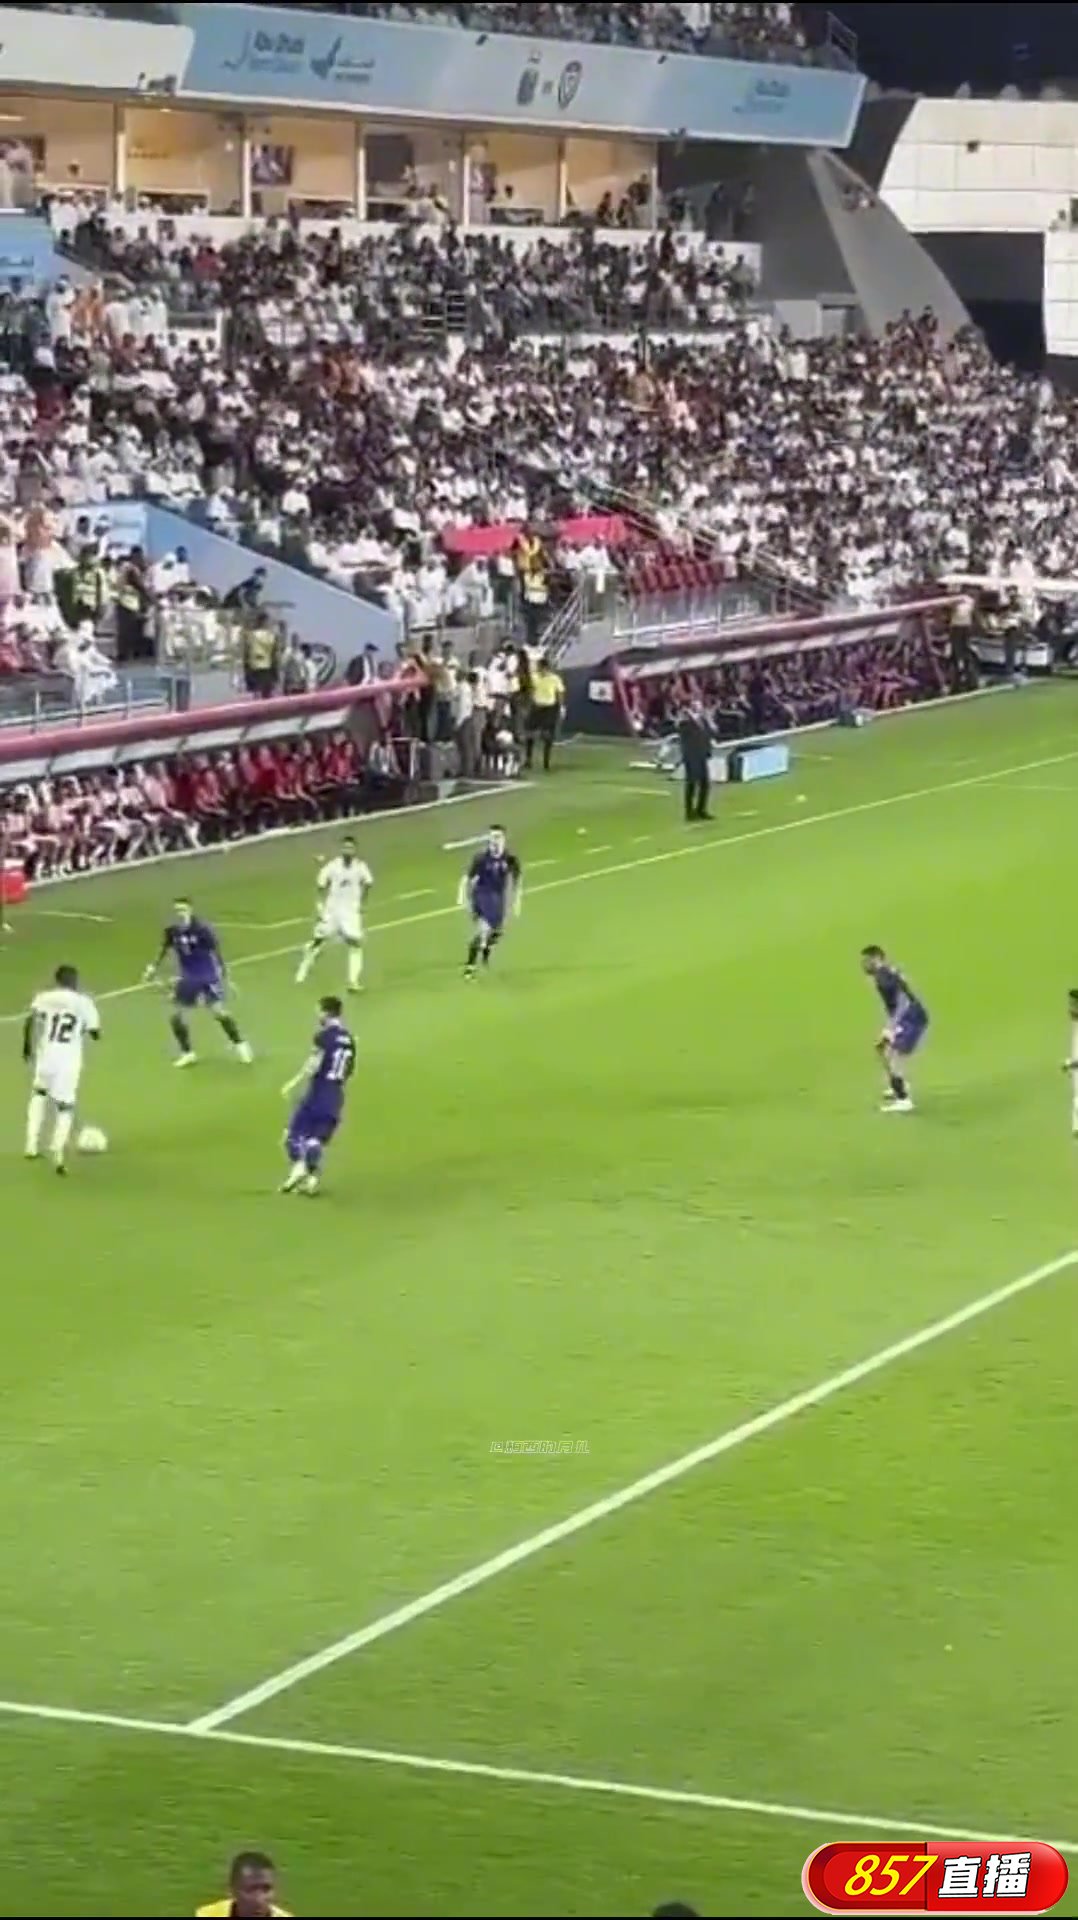 梅西被踢到小腿！阿根廷球迷瞬间哀嚎德保镖快速抵达现场